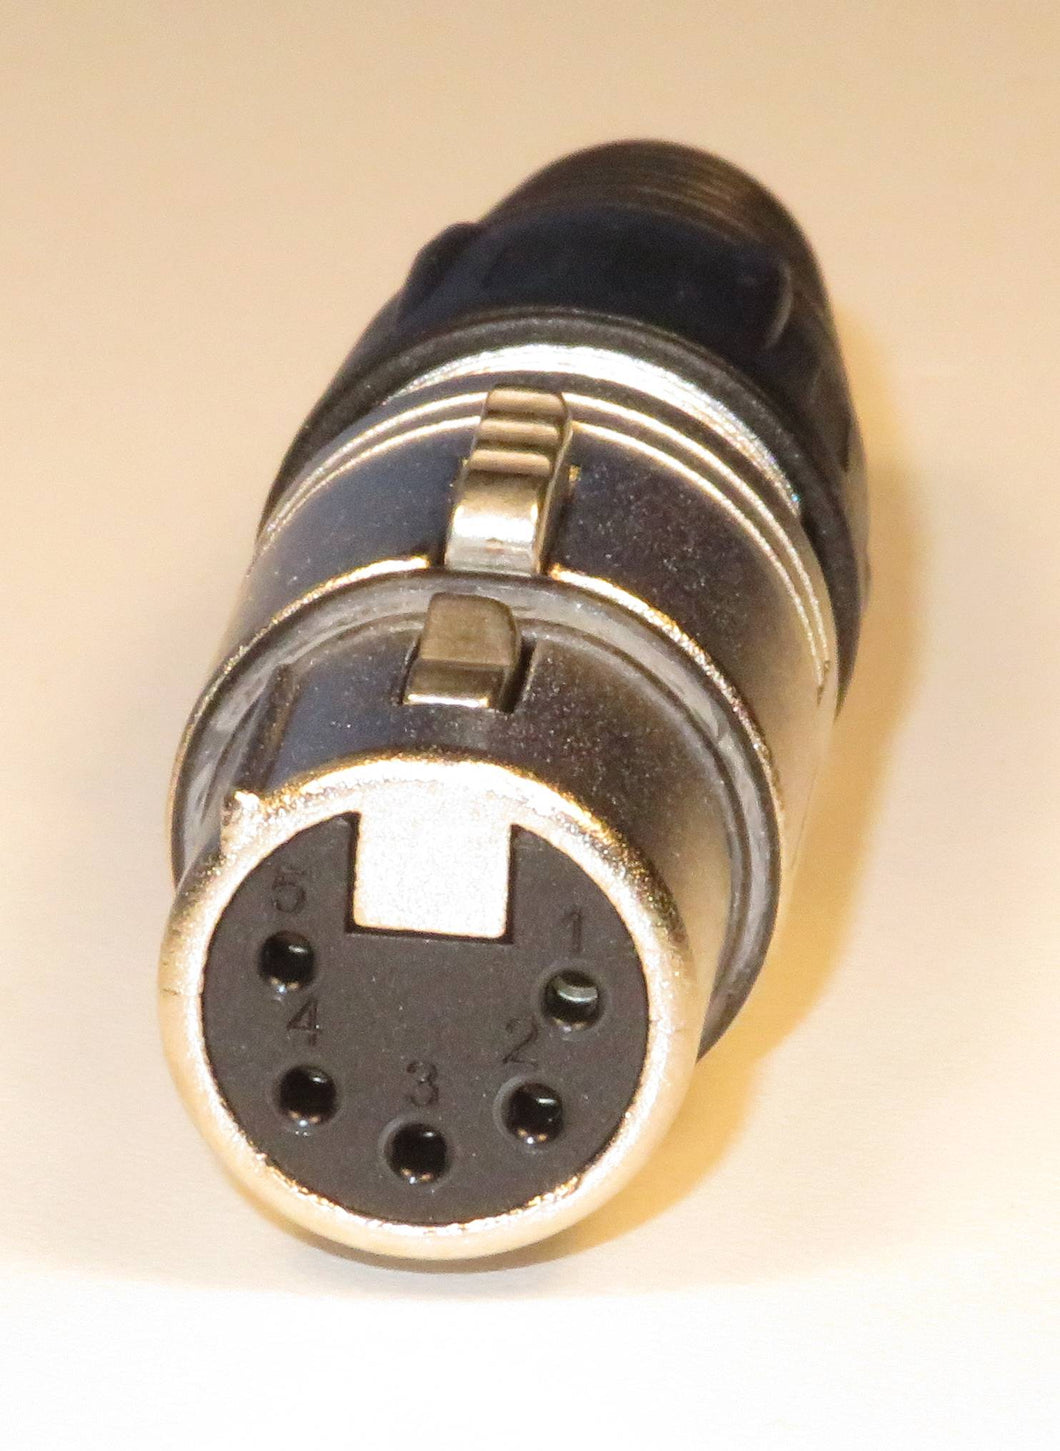 XLR 5 pin connector